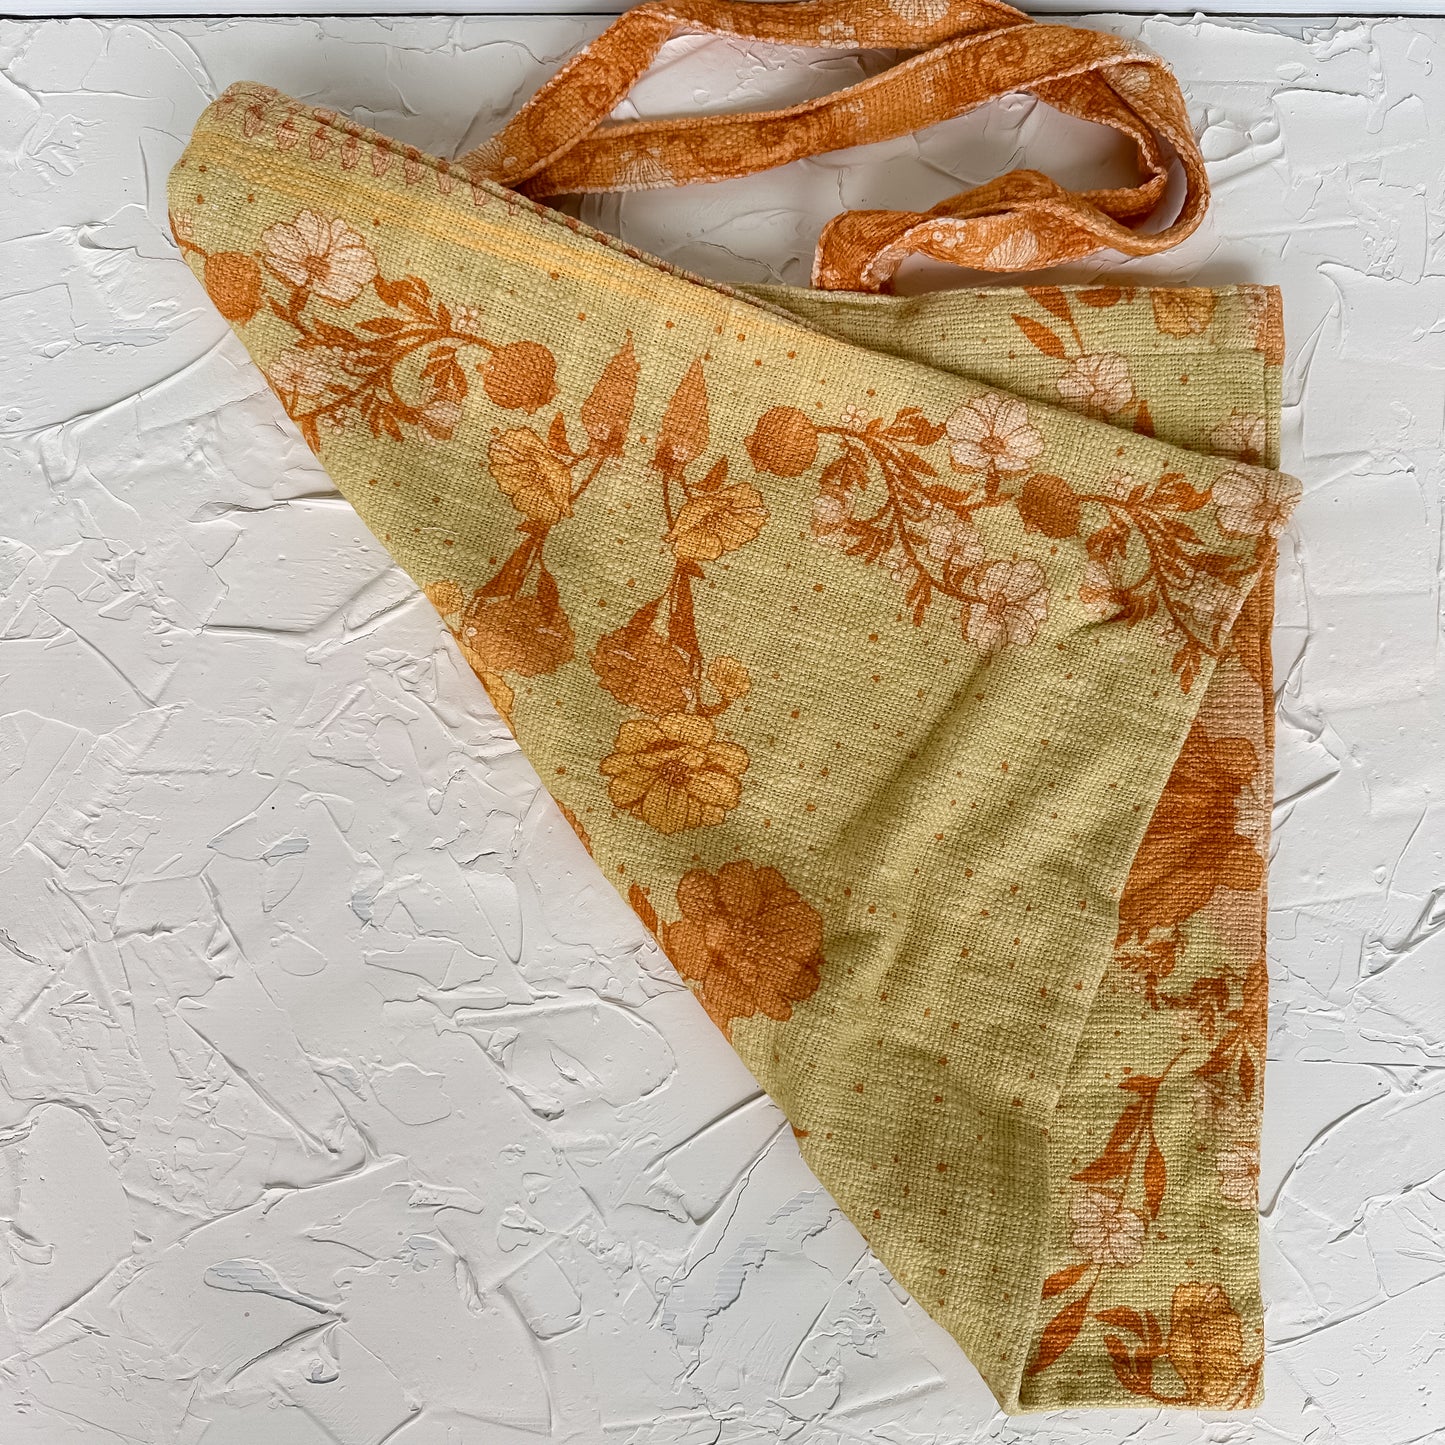 SAMPLE : Oceania Tote bag - Green and orange